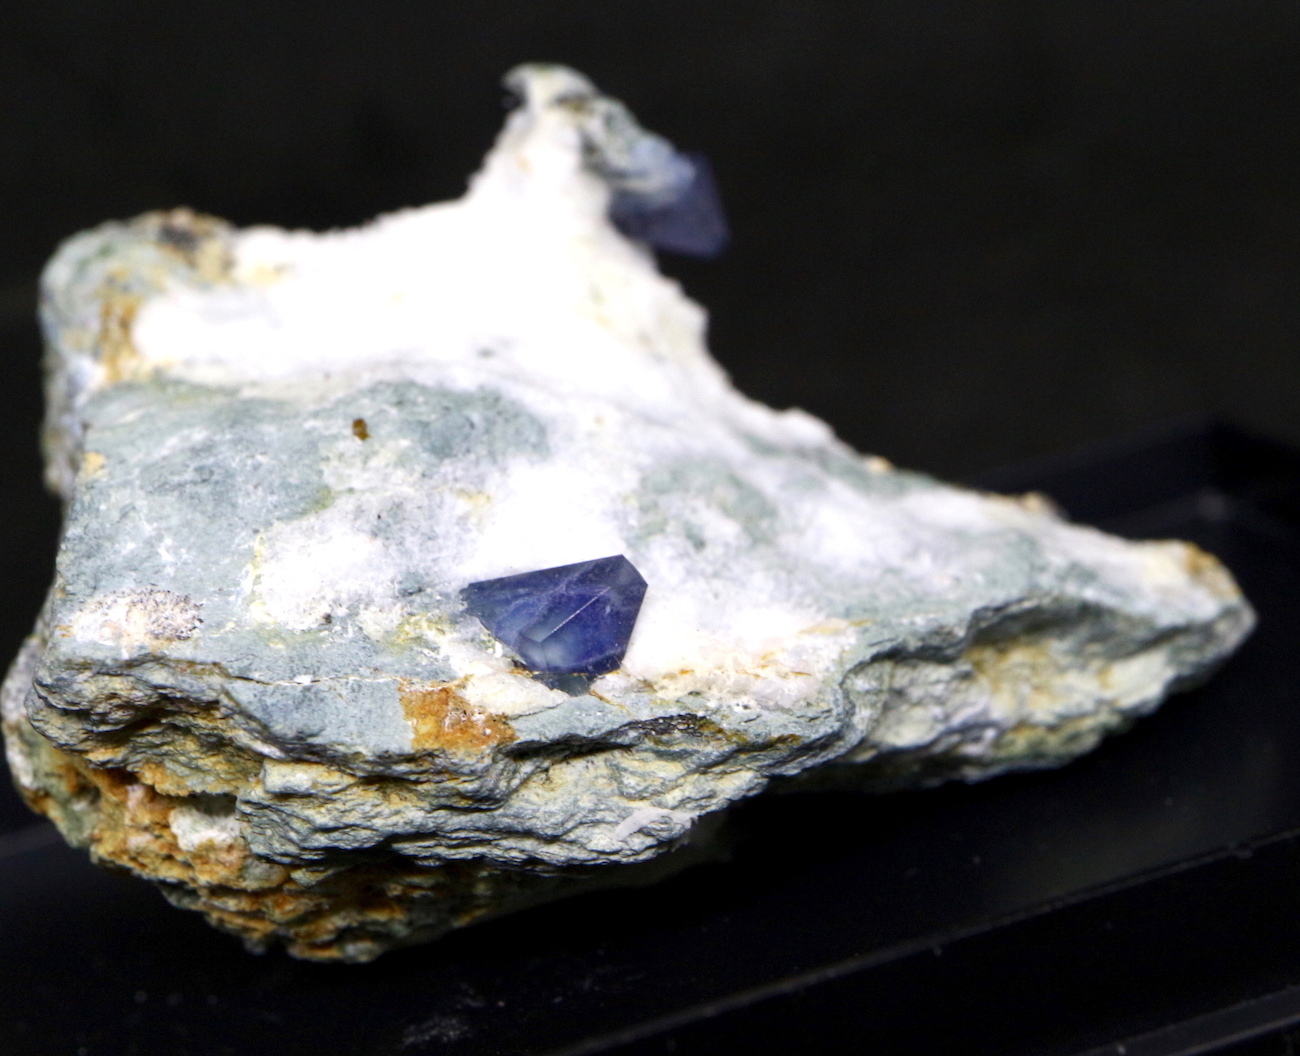 ベニトアイト ベニト石 ケース入り カリフォルニア産 32g BN036 鉱物 天然石 パワーストーン | American Minerals